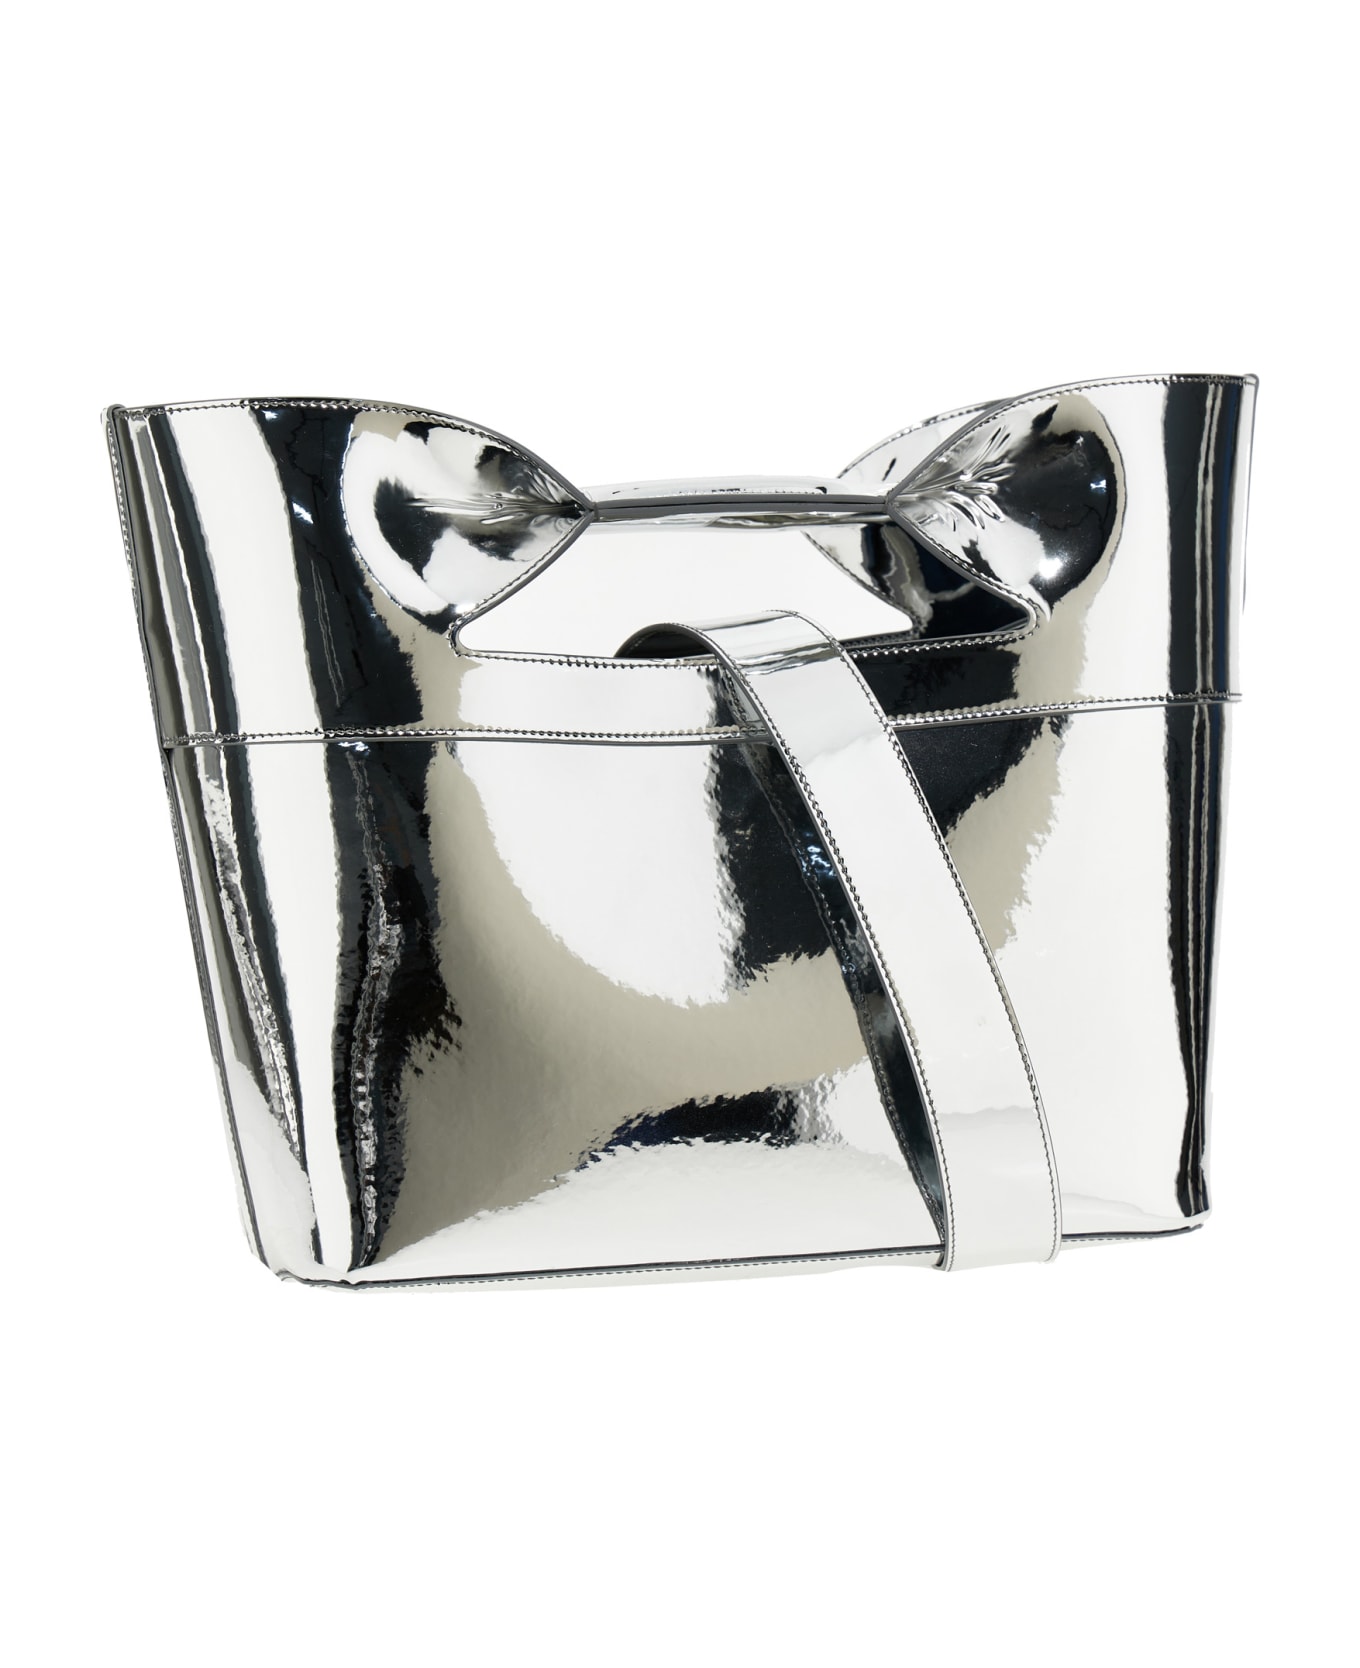 Alexander McQueen 'the Bow' Small Handbag - Silver